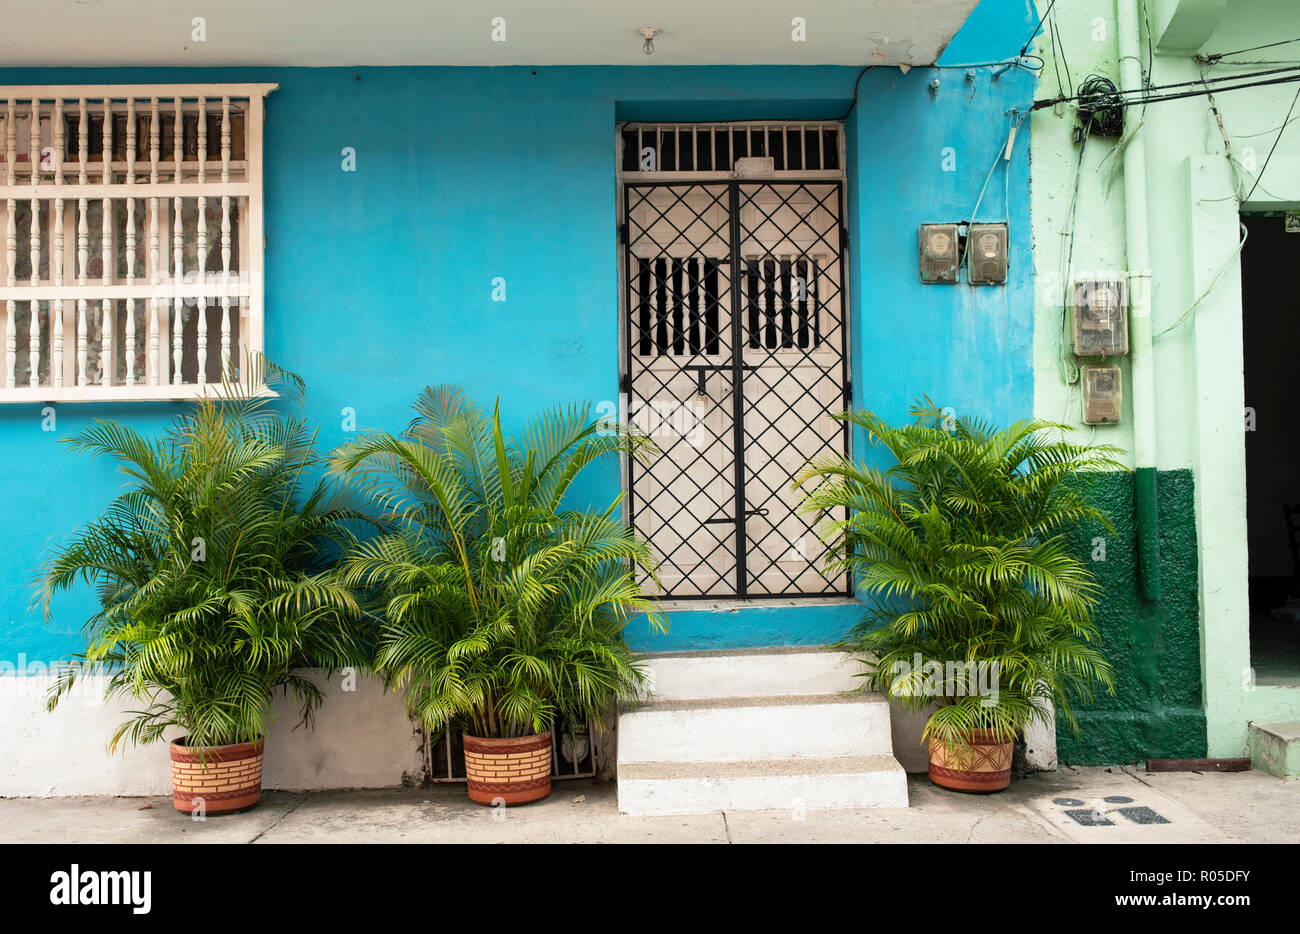 Bunte Wohngebäude mit üppigen Pflanzen. Typische Ansicht der Altstadt von Getsemani. Cartagena de Indias, Kolumbien. Okt 2018 Stockfoto